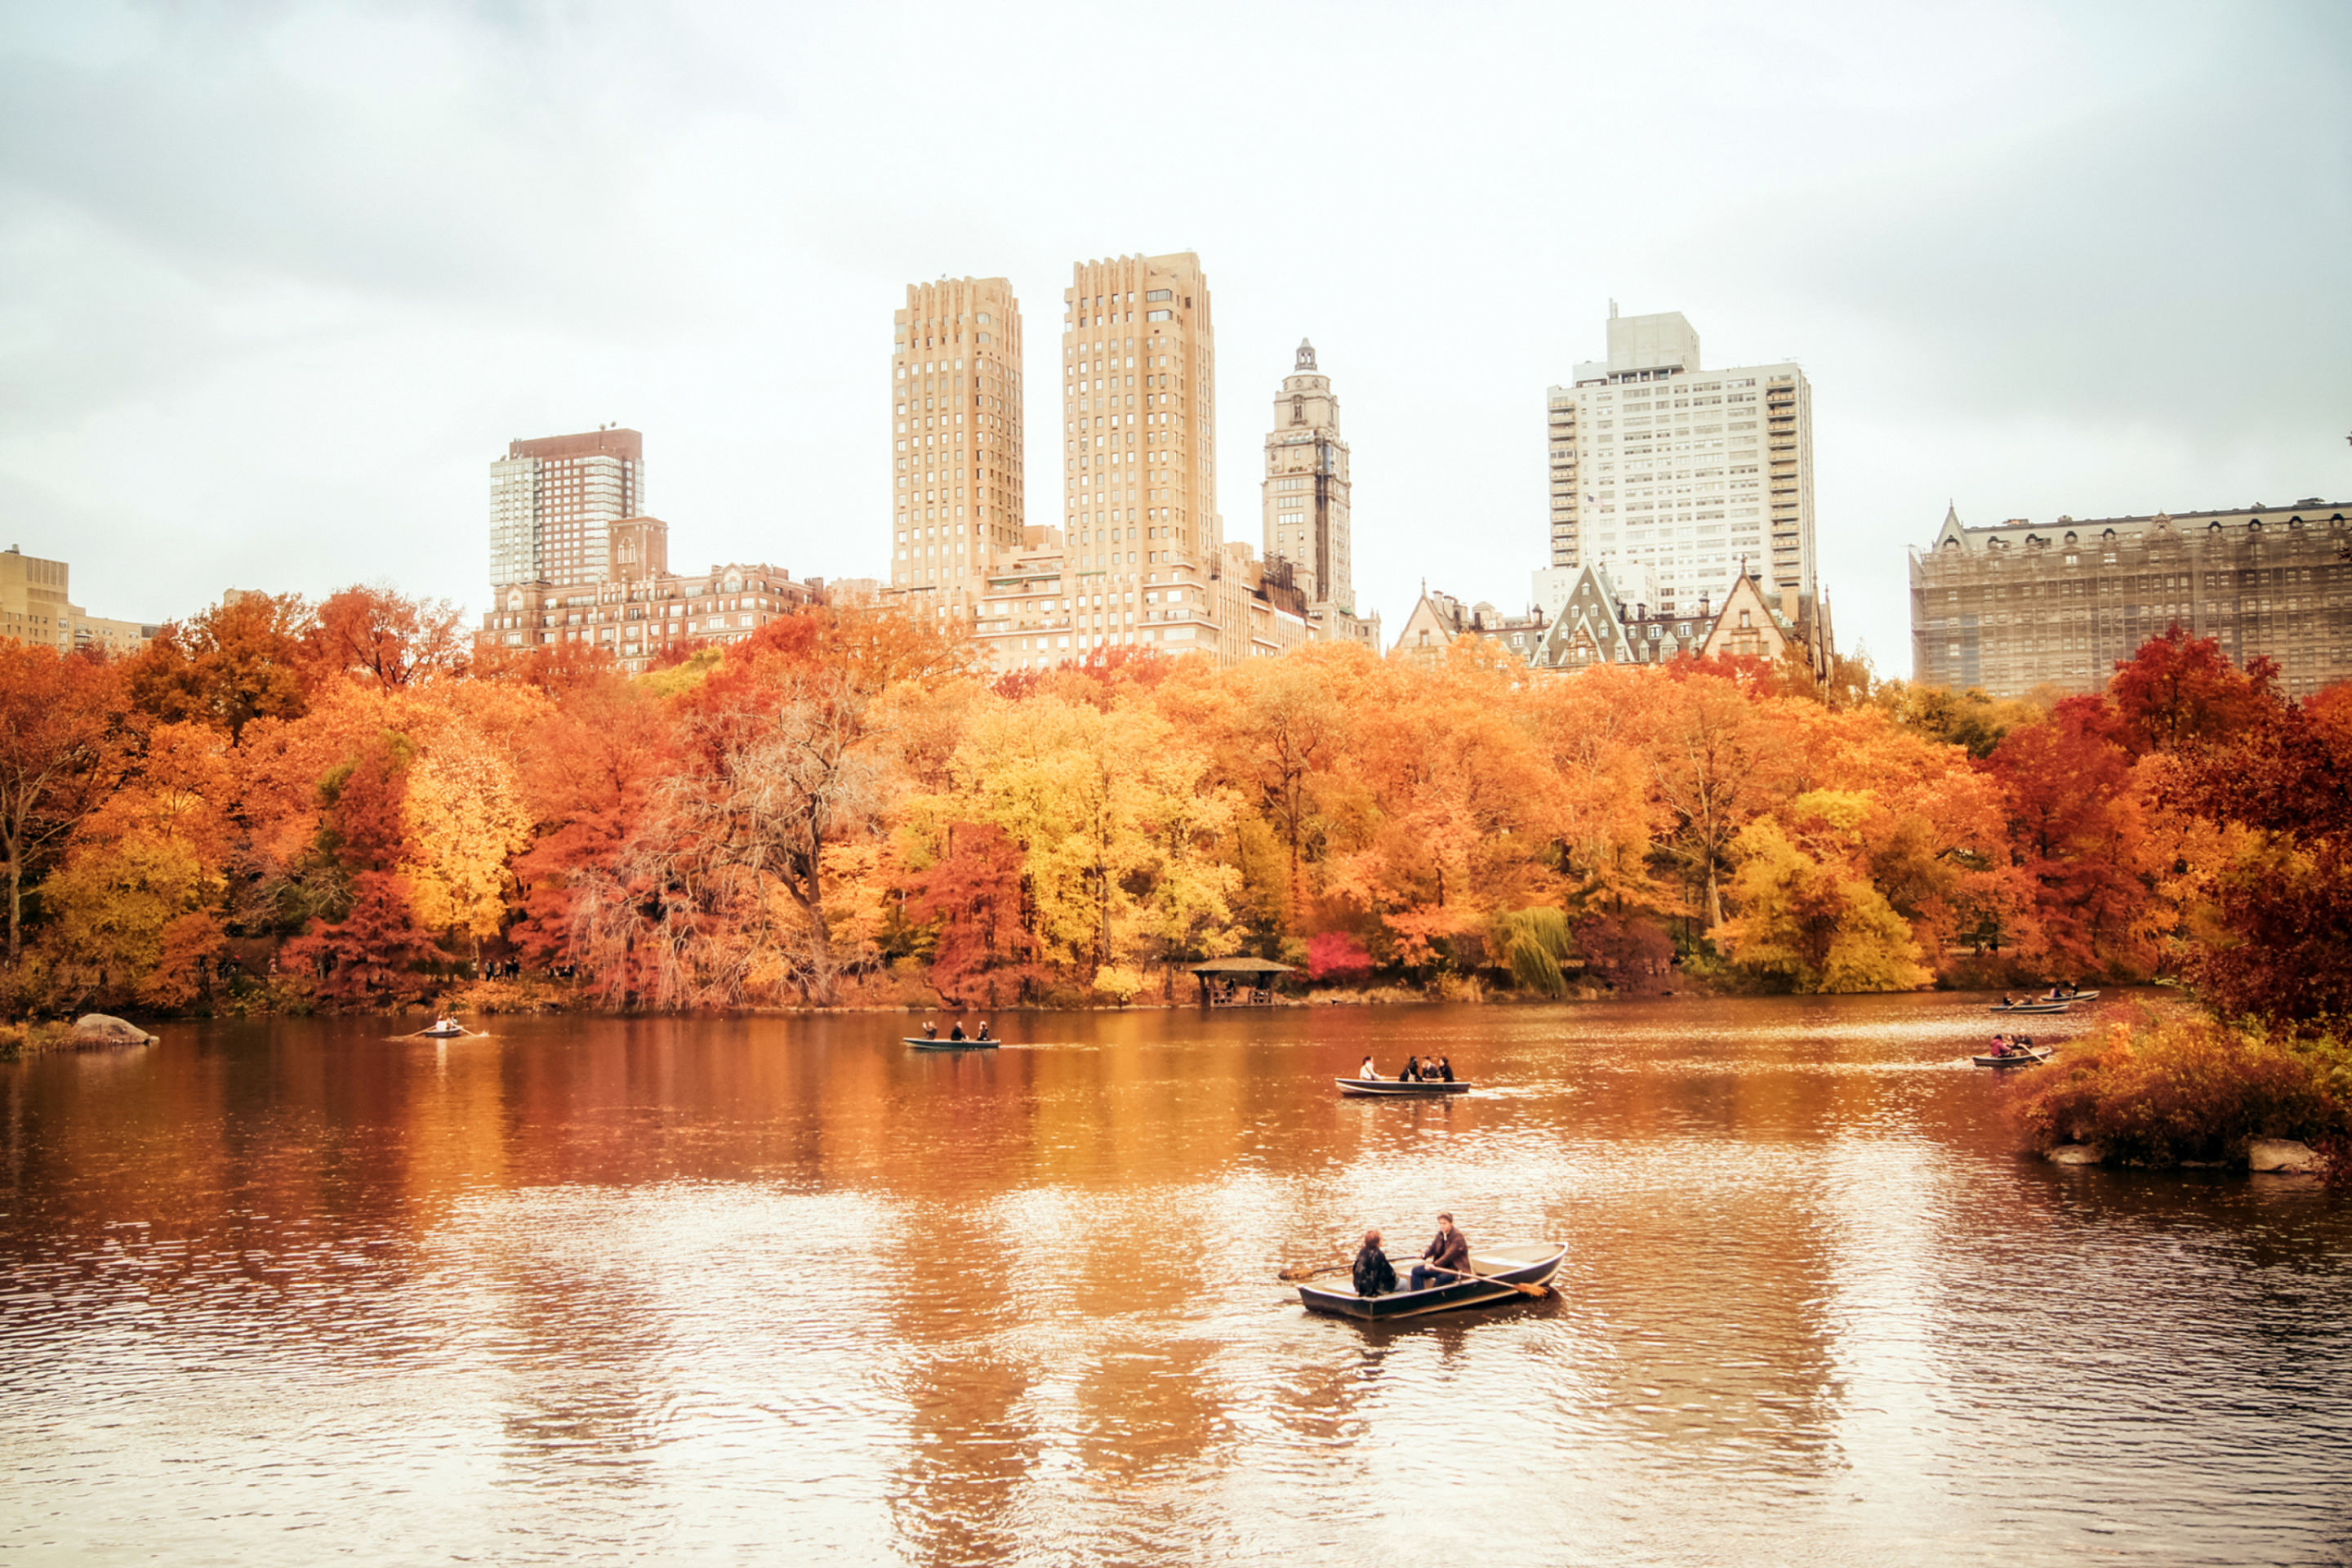 Nature in the city is. Централ парк Нью-Йорк. Осенний Нью-Йорк централ парк. Осень в Нью-Йорке Центральный парк. Центральный парк Нью-Йорк осенью.